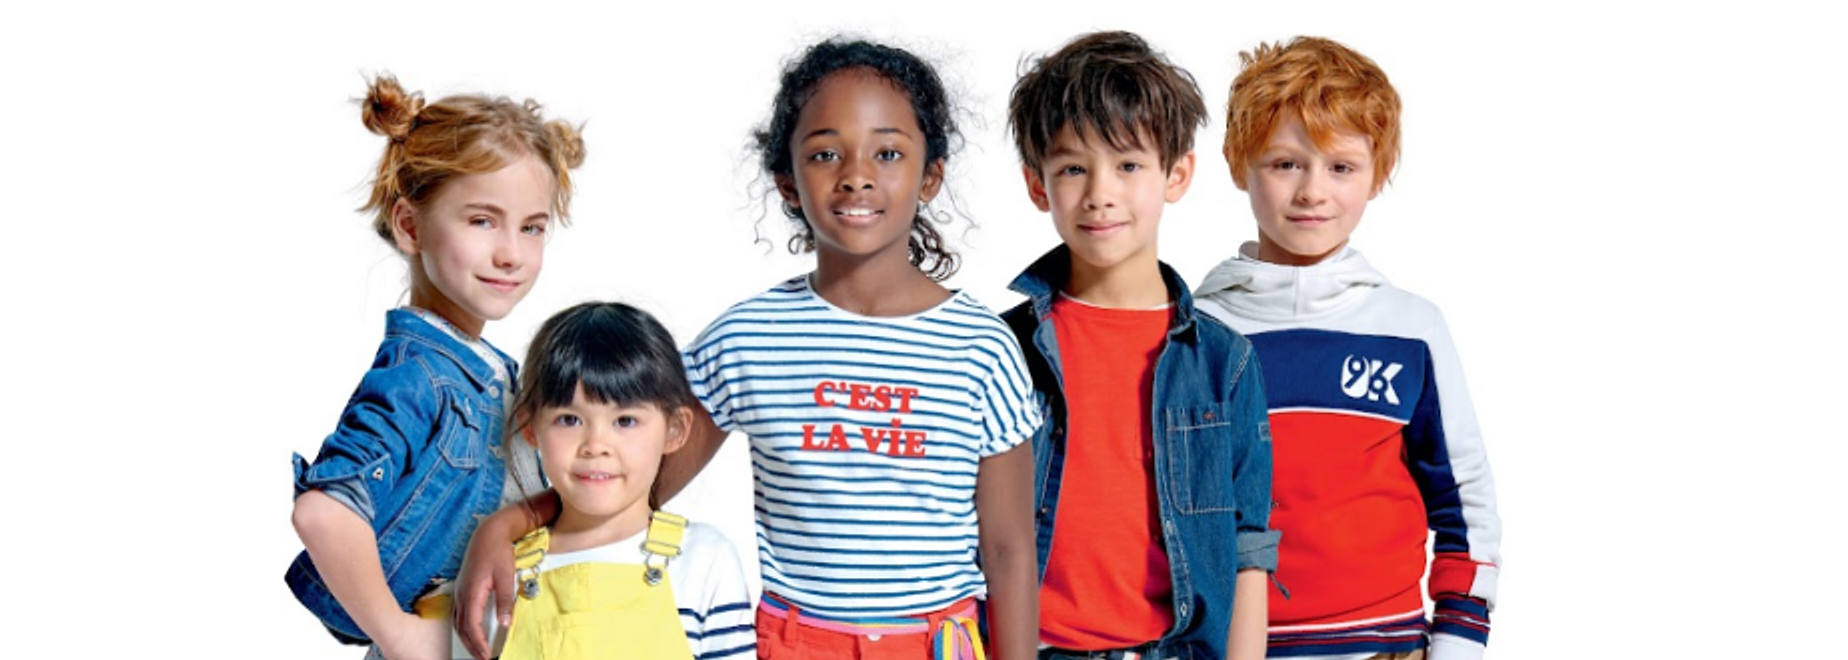 Okaidi Avant Cap Plan de Campagne Centre commercial Boutiques Mode Enfant Shopping